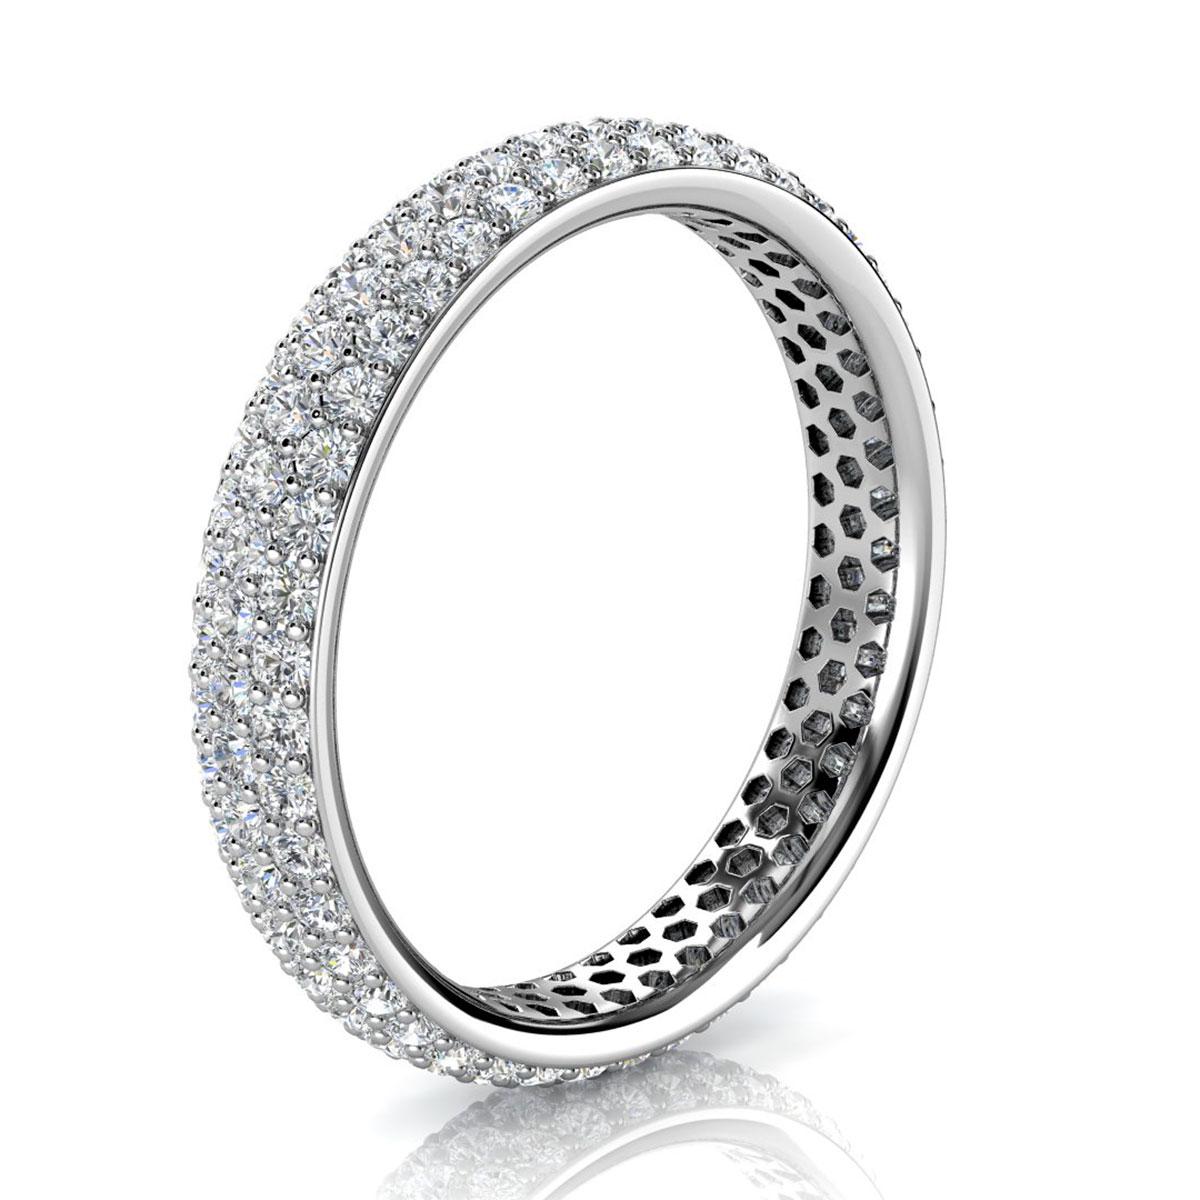 Cet étonnant anneau d'éternité comporte trois rangées de 130 diamants ronds brillants parfaitement assortis et sertis en micro-pinces. Découvrez la différence en personne !

Détails du produit : 

Couleur de la pierre centrale : BLANC
Type de pierre